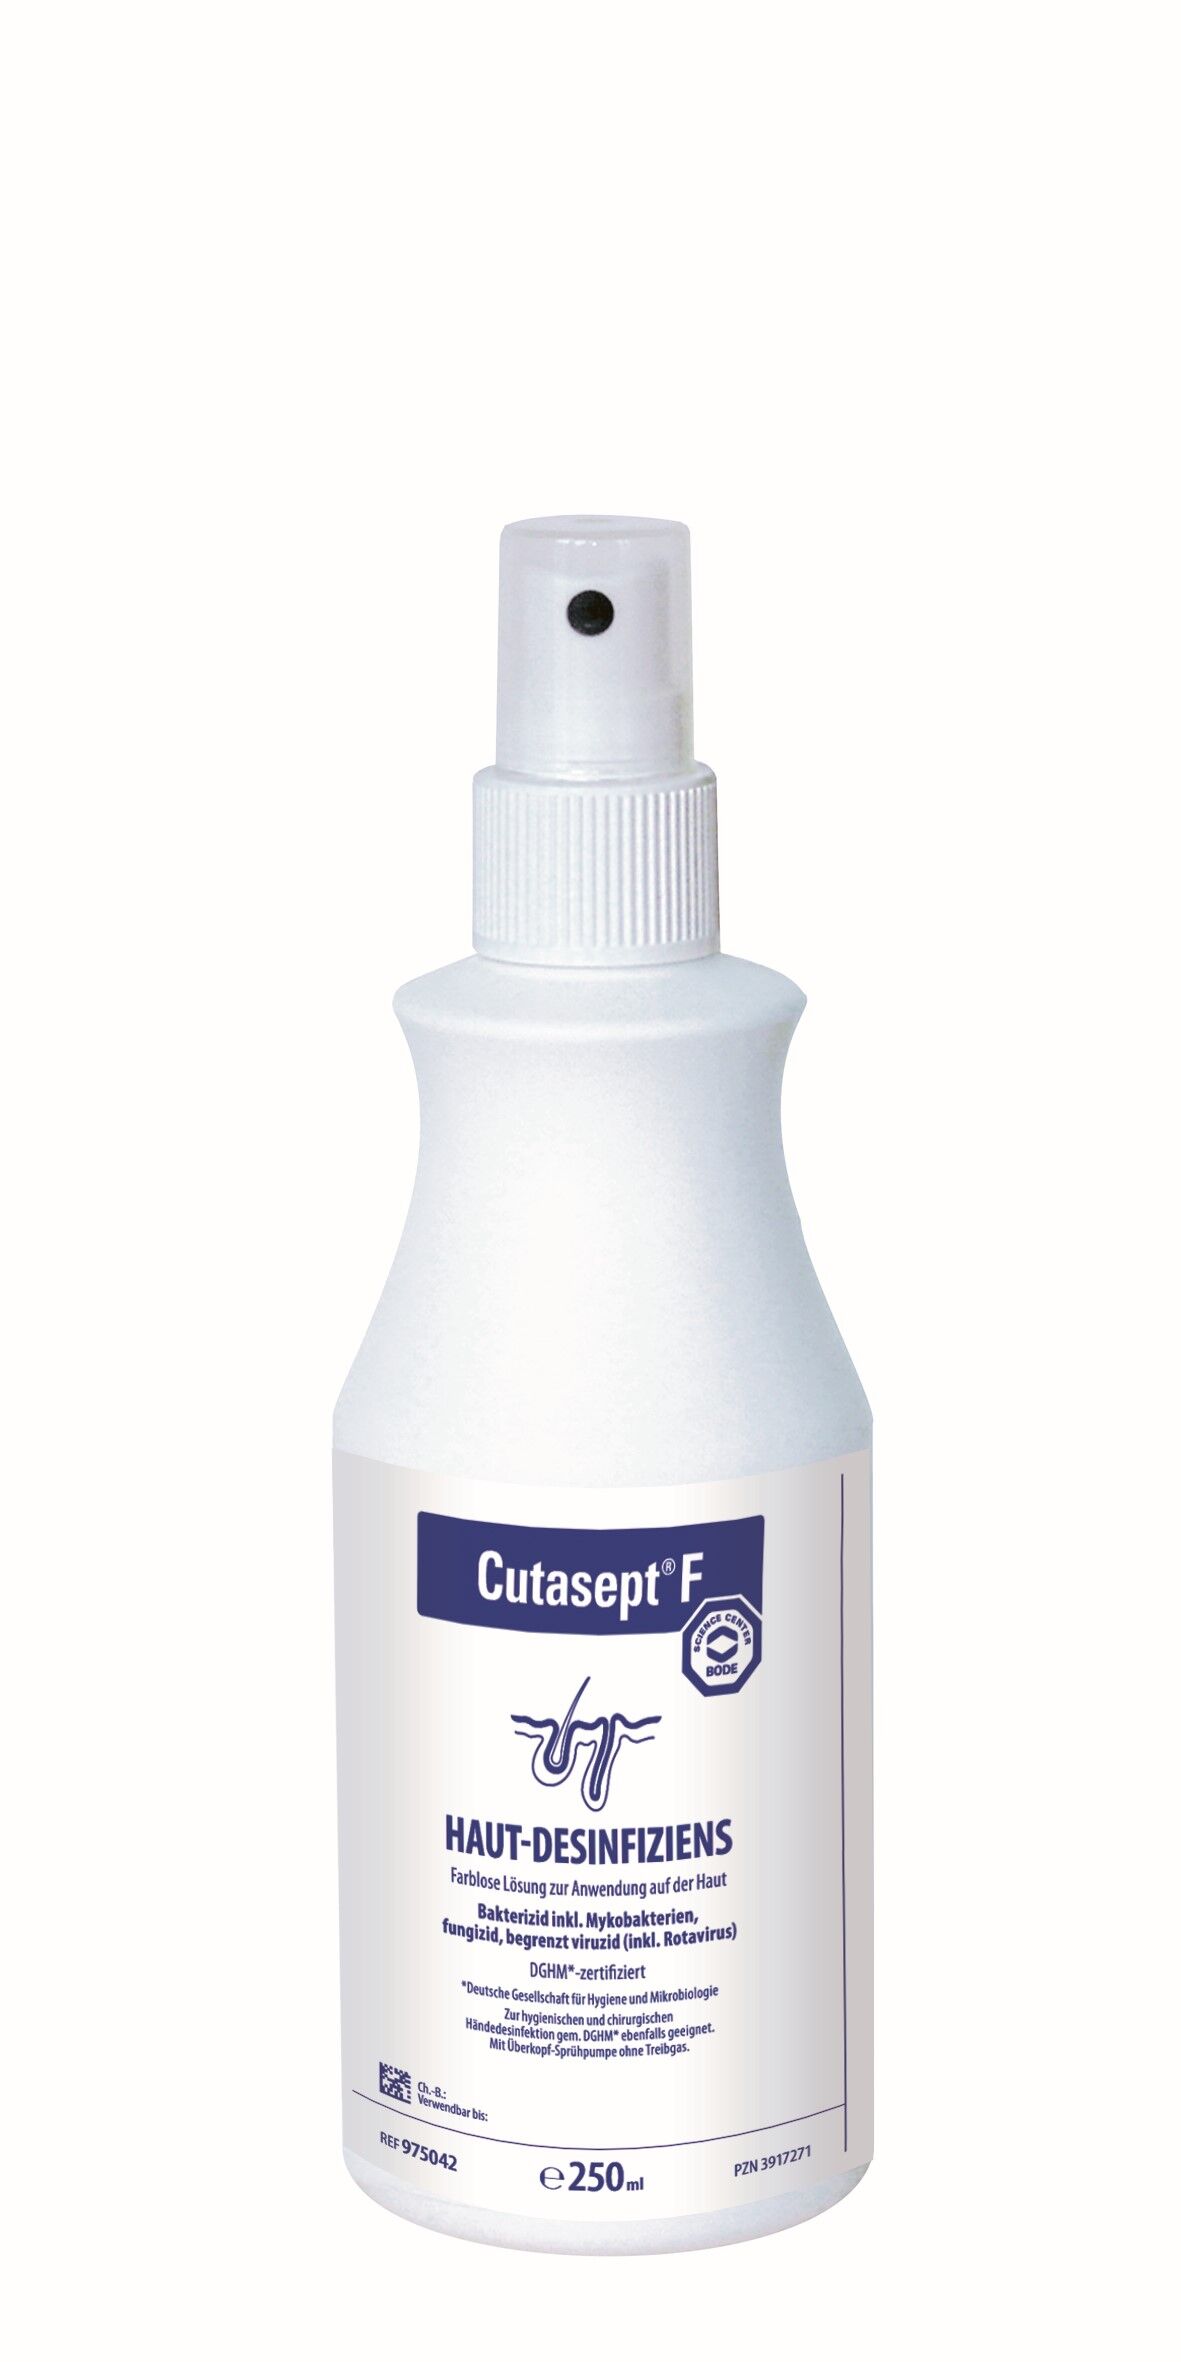 Cutasept F Hautdesinfektionsmittel in der 250ml-Flasche